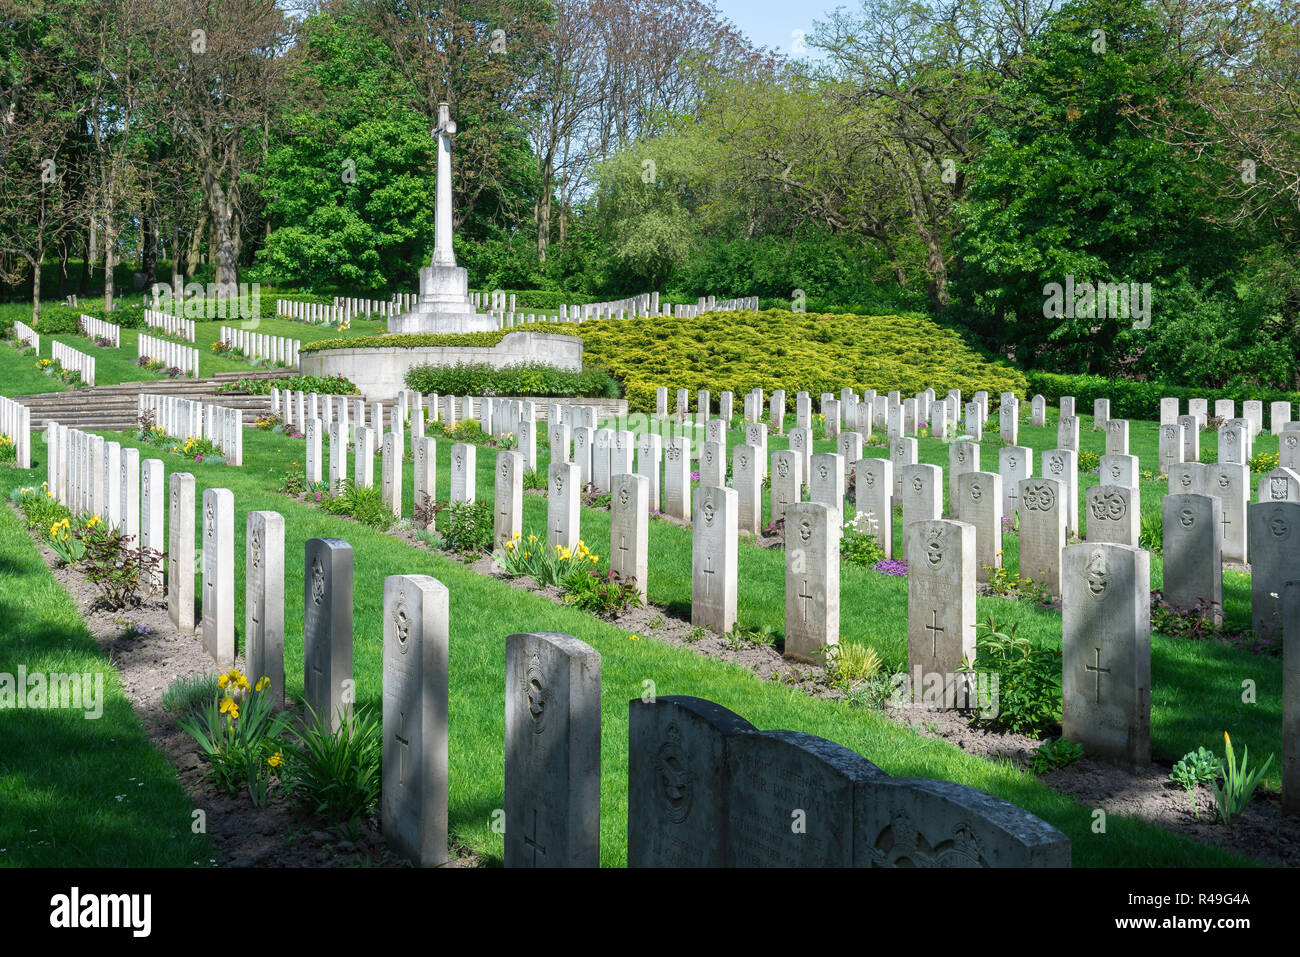 Britische Grab, Blick auf die grabsteine der britischen Soldaten, die in zwei Weltkriegen in der Garnisonsfriedhof in Poznan (Posen), Polen kämpfte Stockfoto